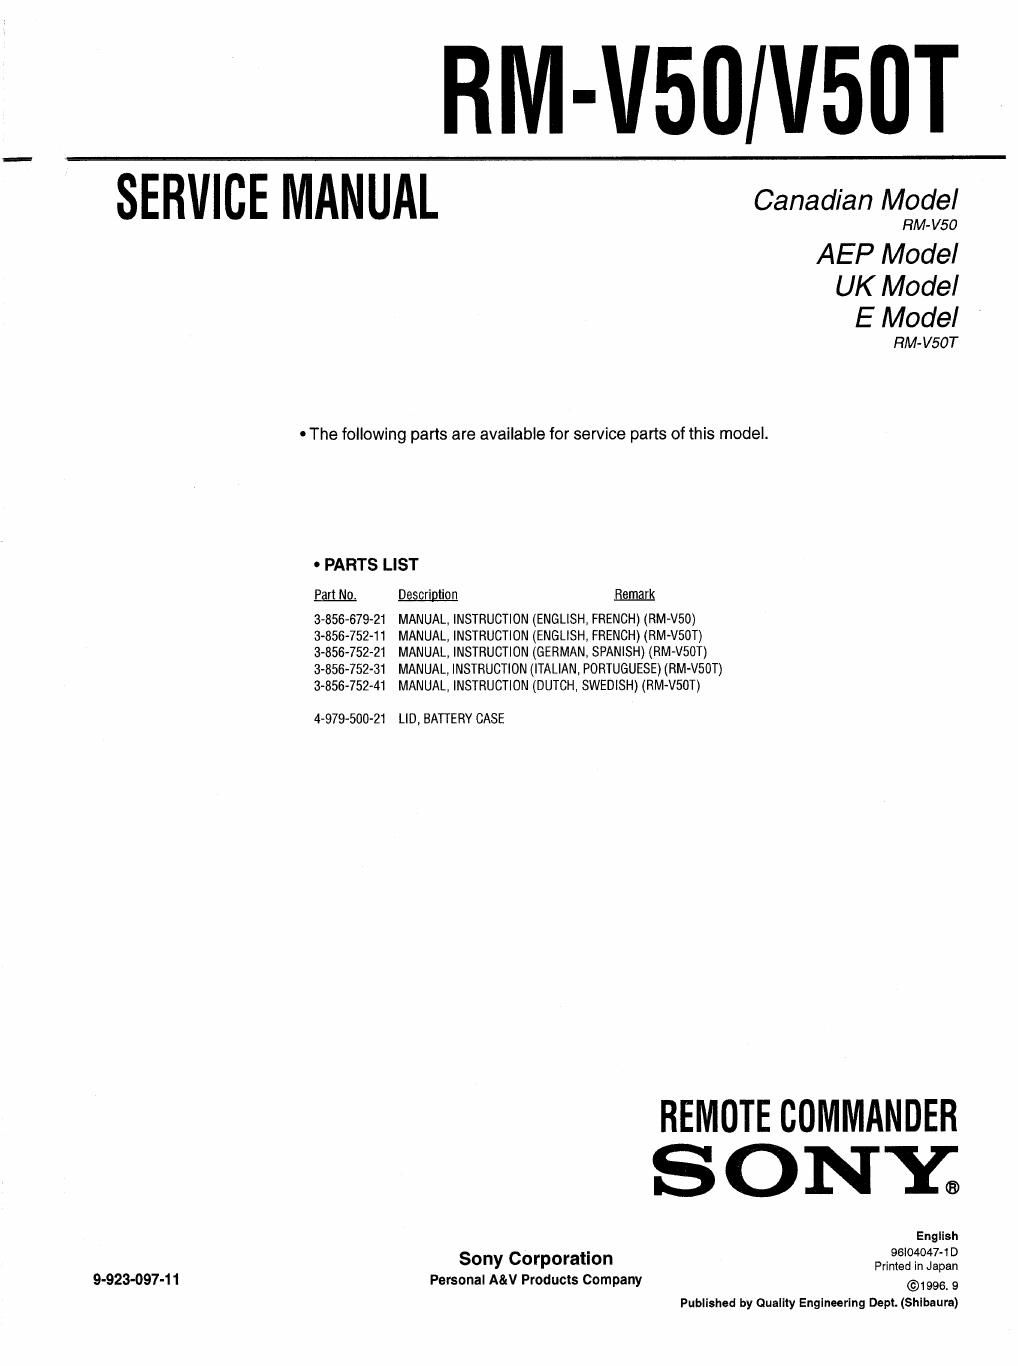 sony rm v 50 t service manual